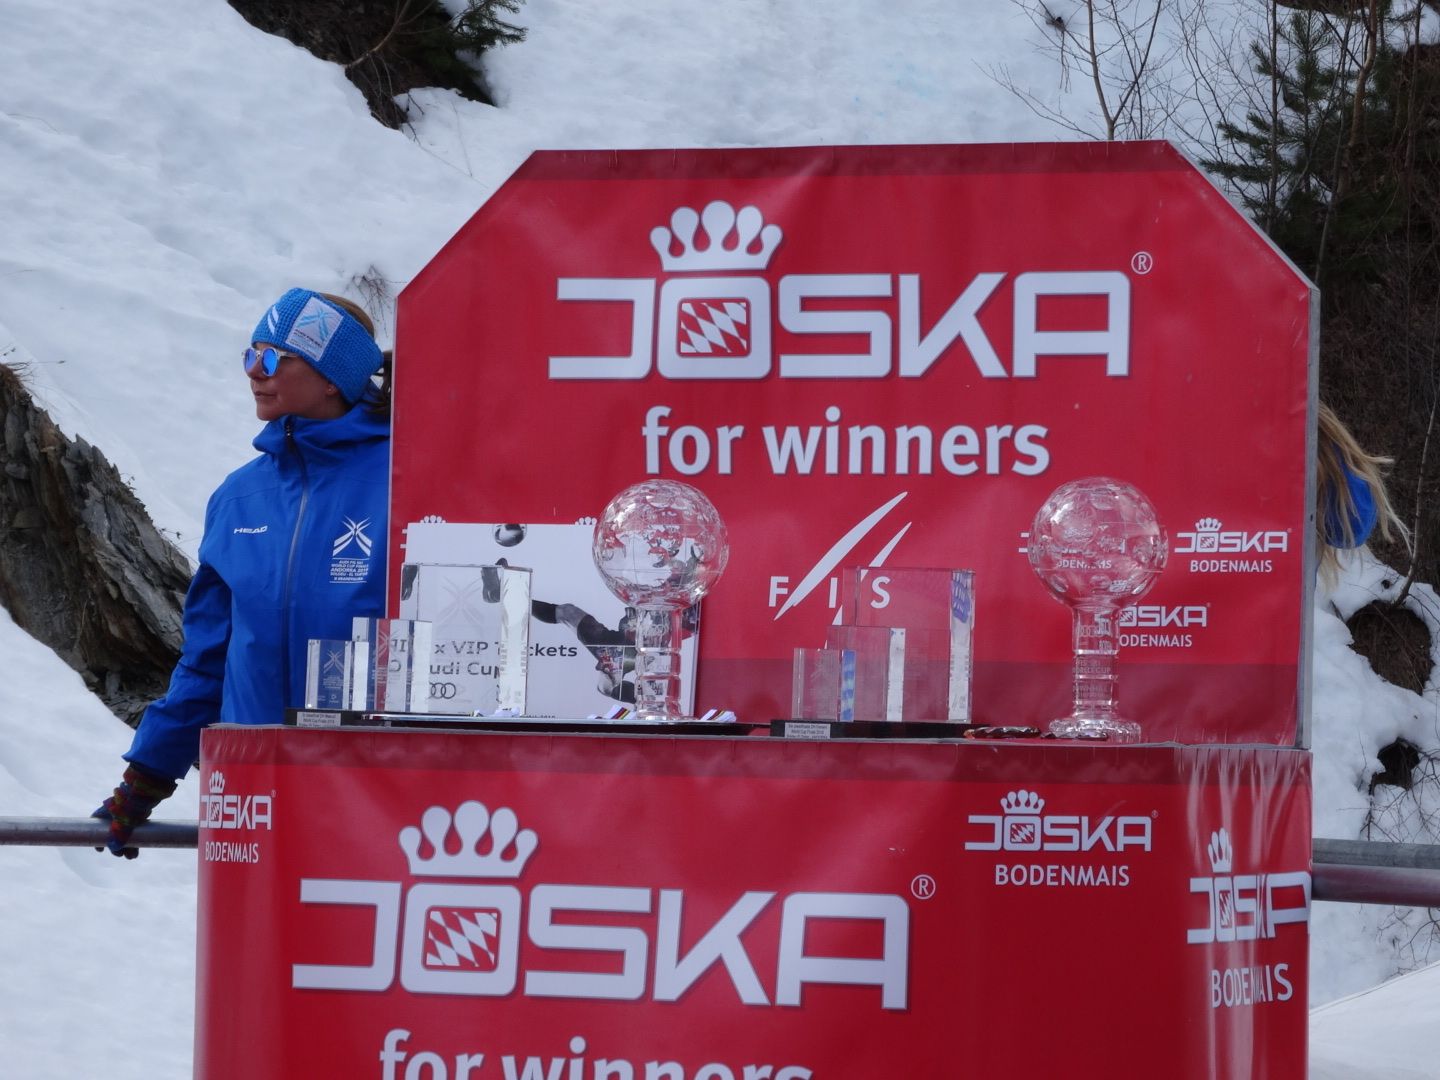 Joska globos de cristal copa del mundo esquí